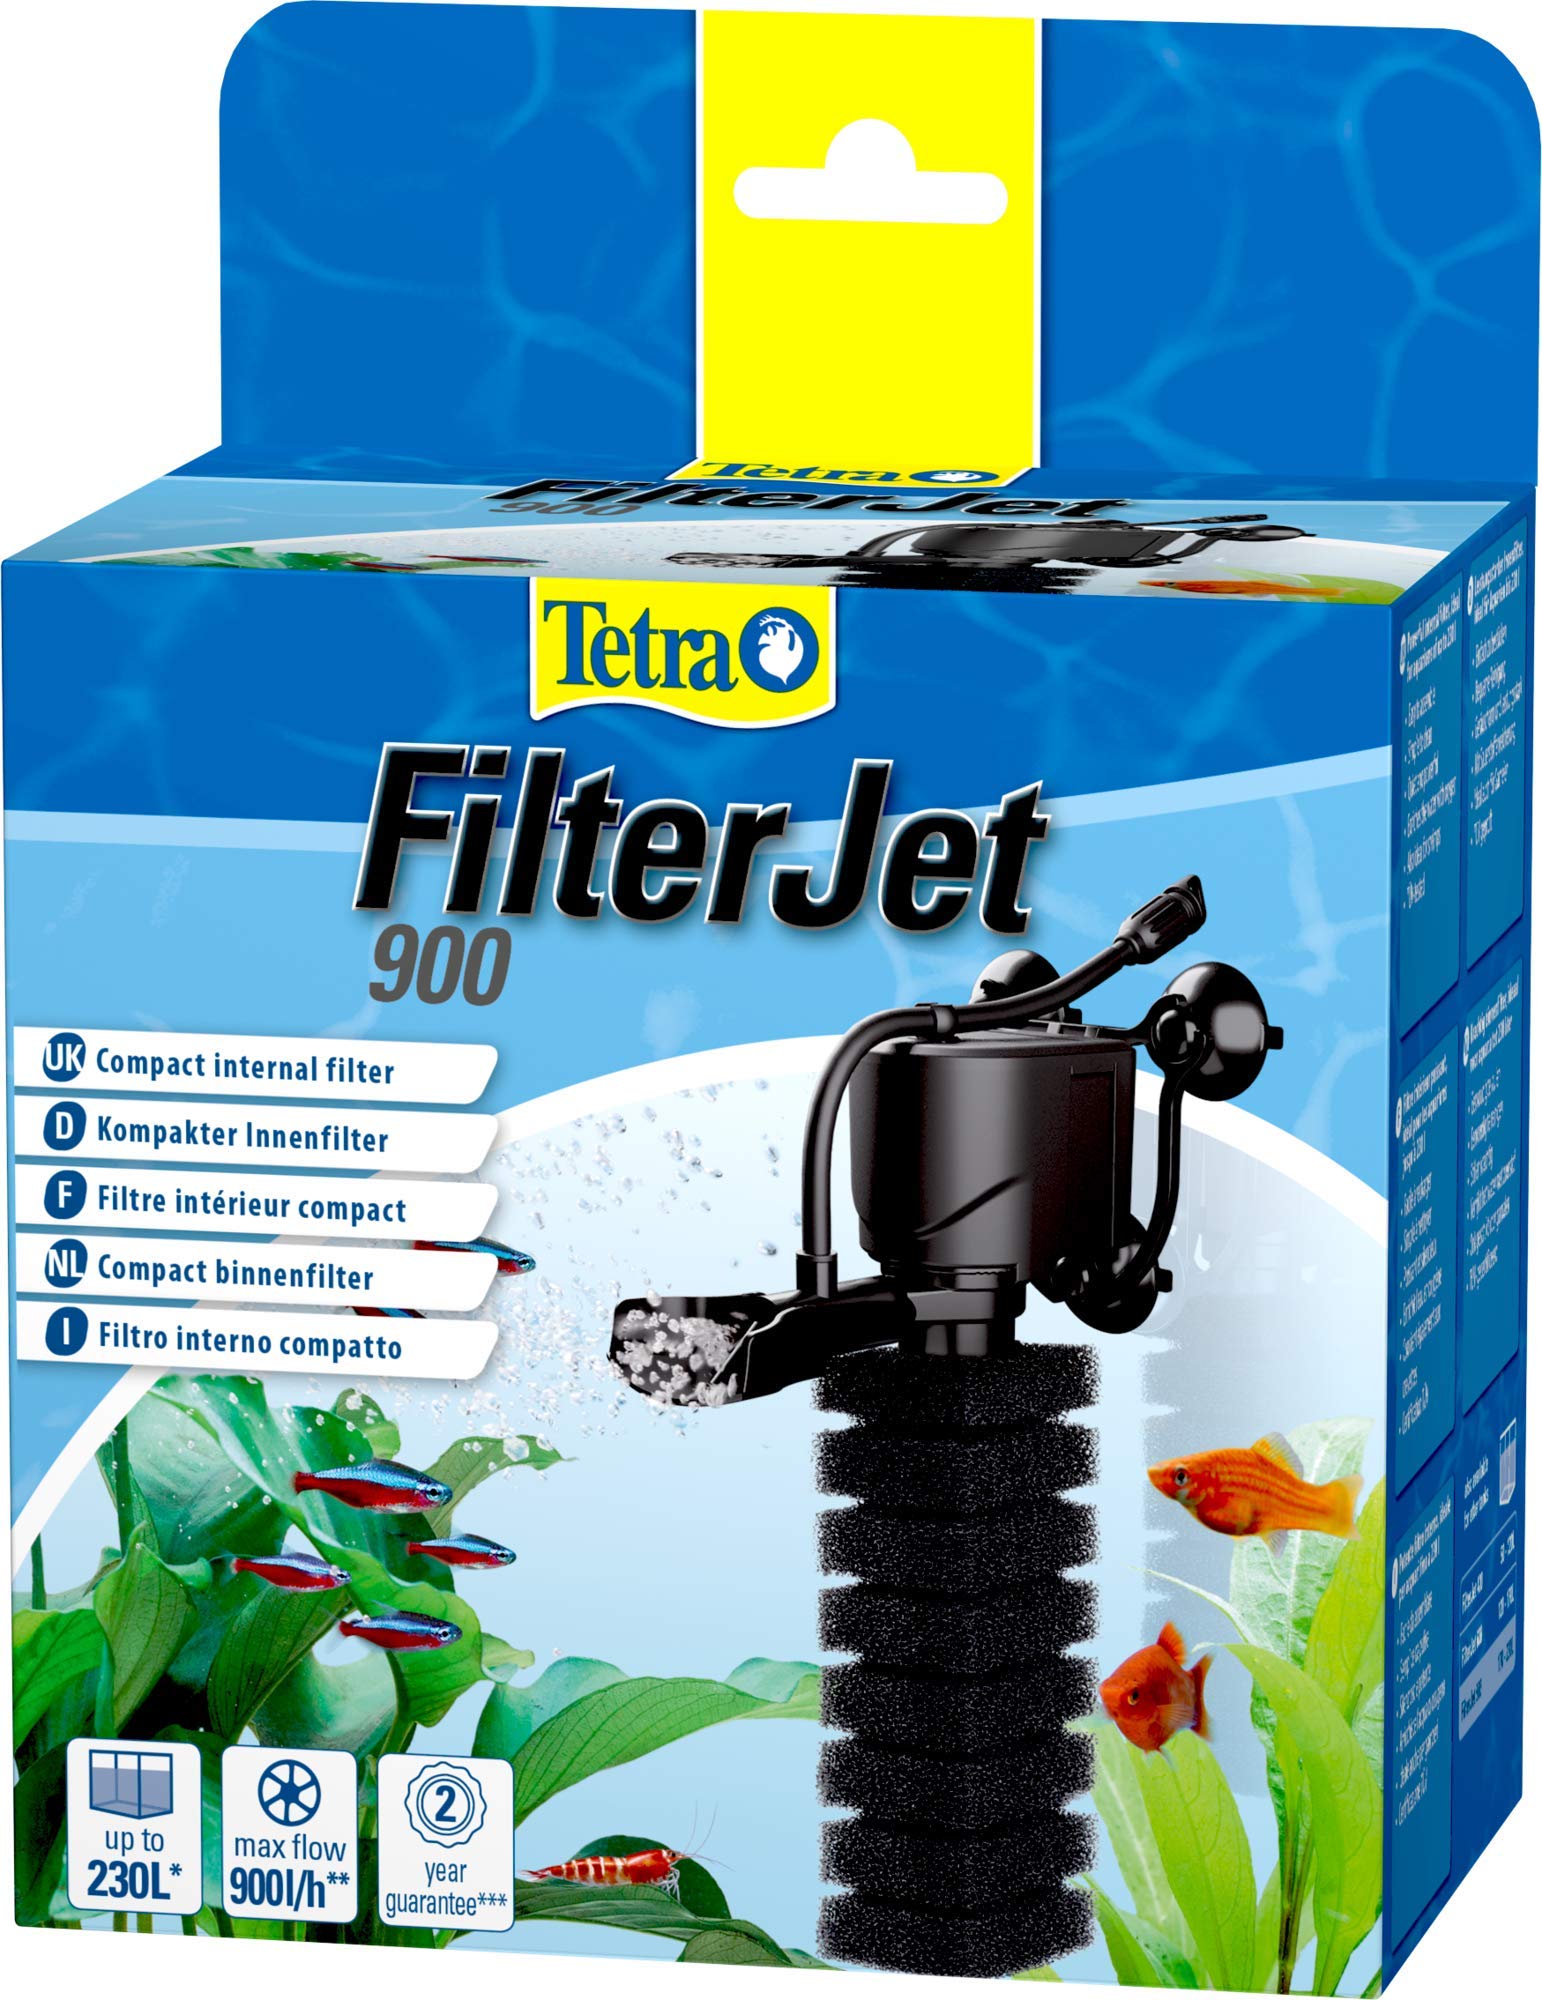 Tetra FilterJet 900 - leistungsstarker Aquarium Innenfilter mit Sauerstoffanreicherung, Aquarium Filter für Aquarien bis 230 L